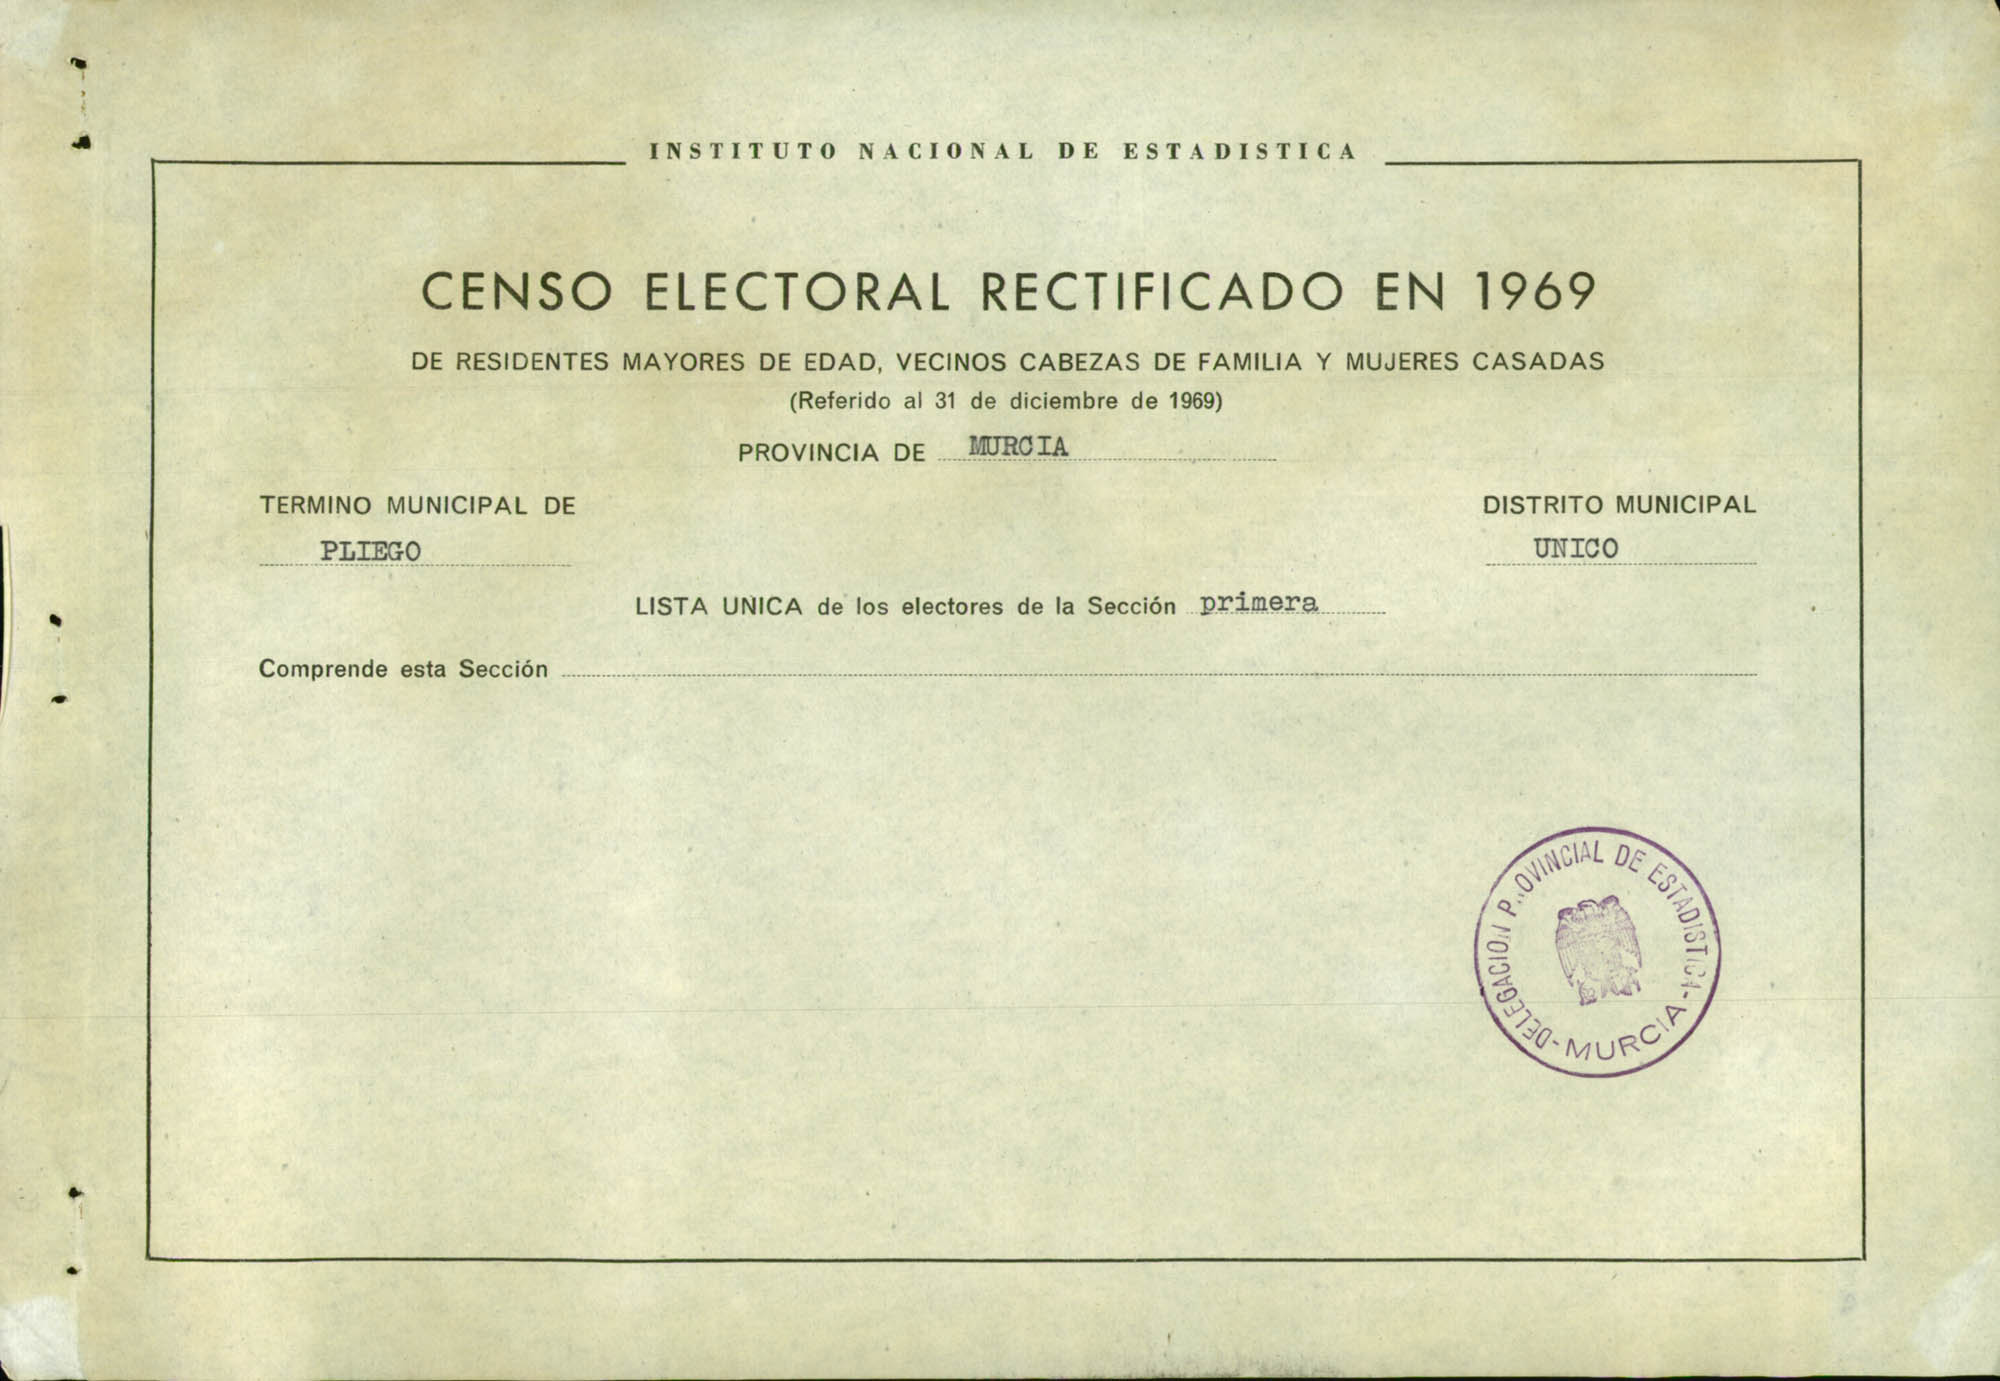 Censo electoral rectificado en 1969: listas definitivas de Pliego, Distrito Único, sección 1ª.